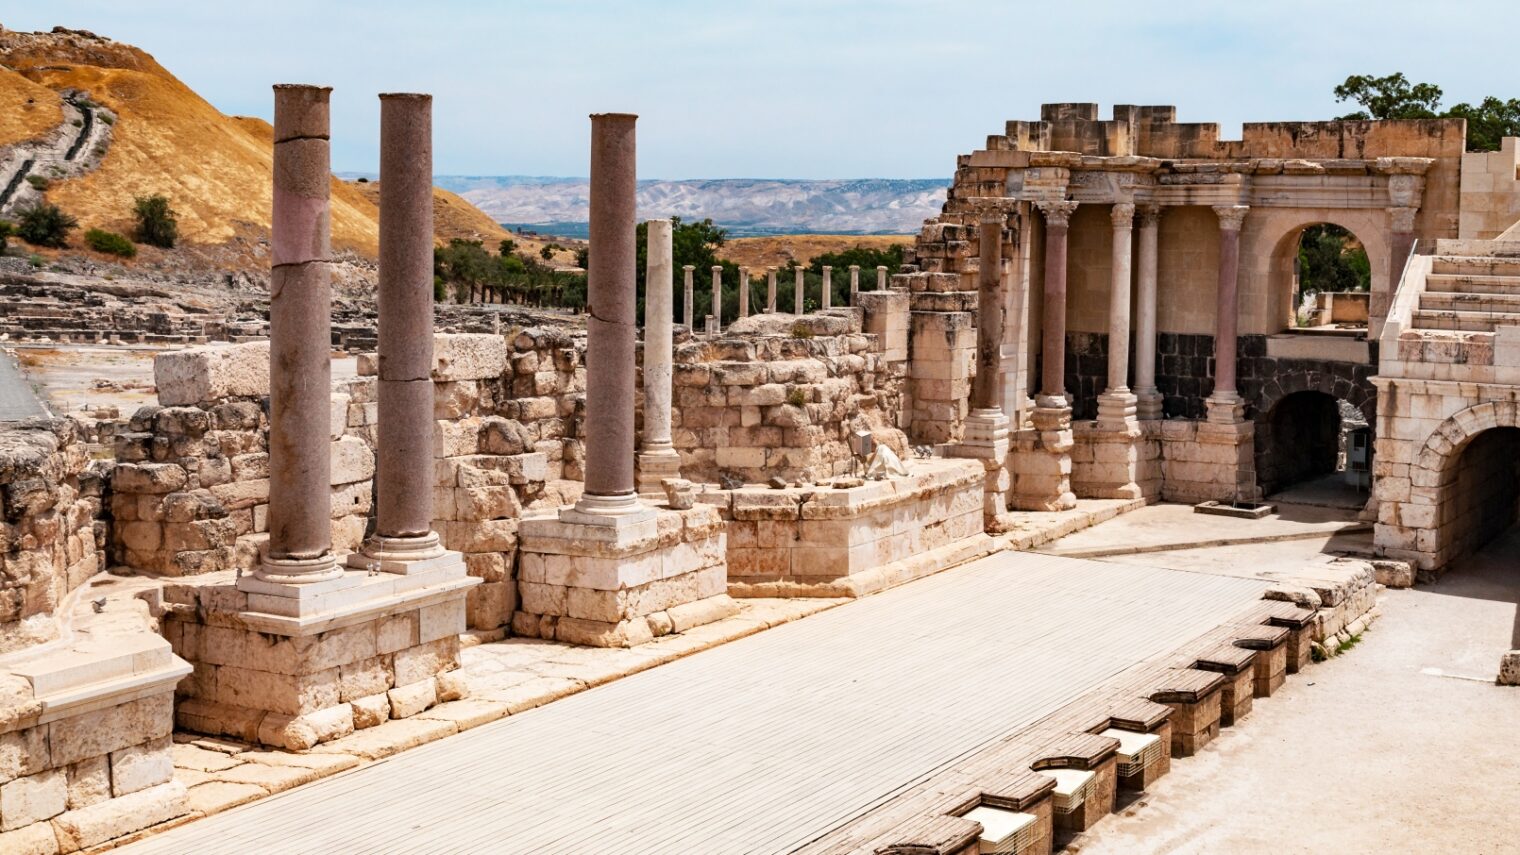 Photo of Beit She’an Archeological Park via Shutterstock.com